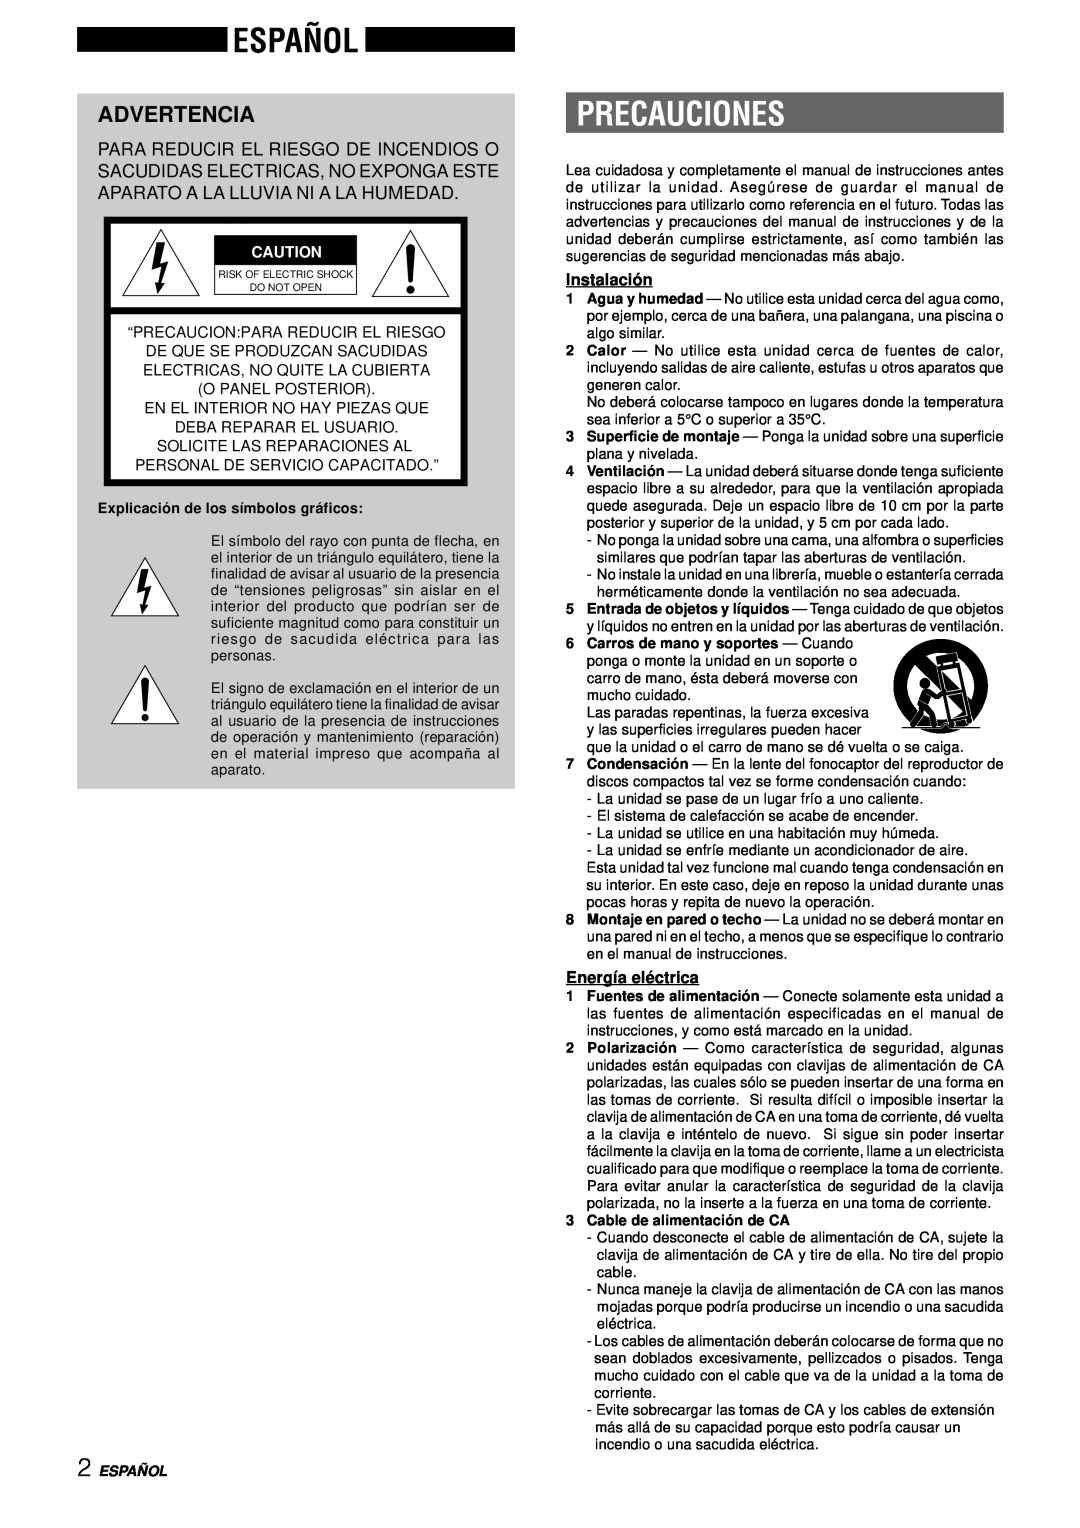 Aiwa NSX-DS8 manual Español, Precauciones, Advertencia, Instalació n, Energía elé ctrica, Españ Ol 